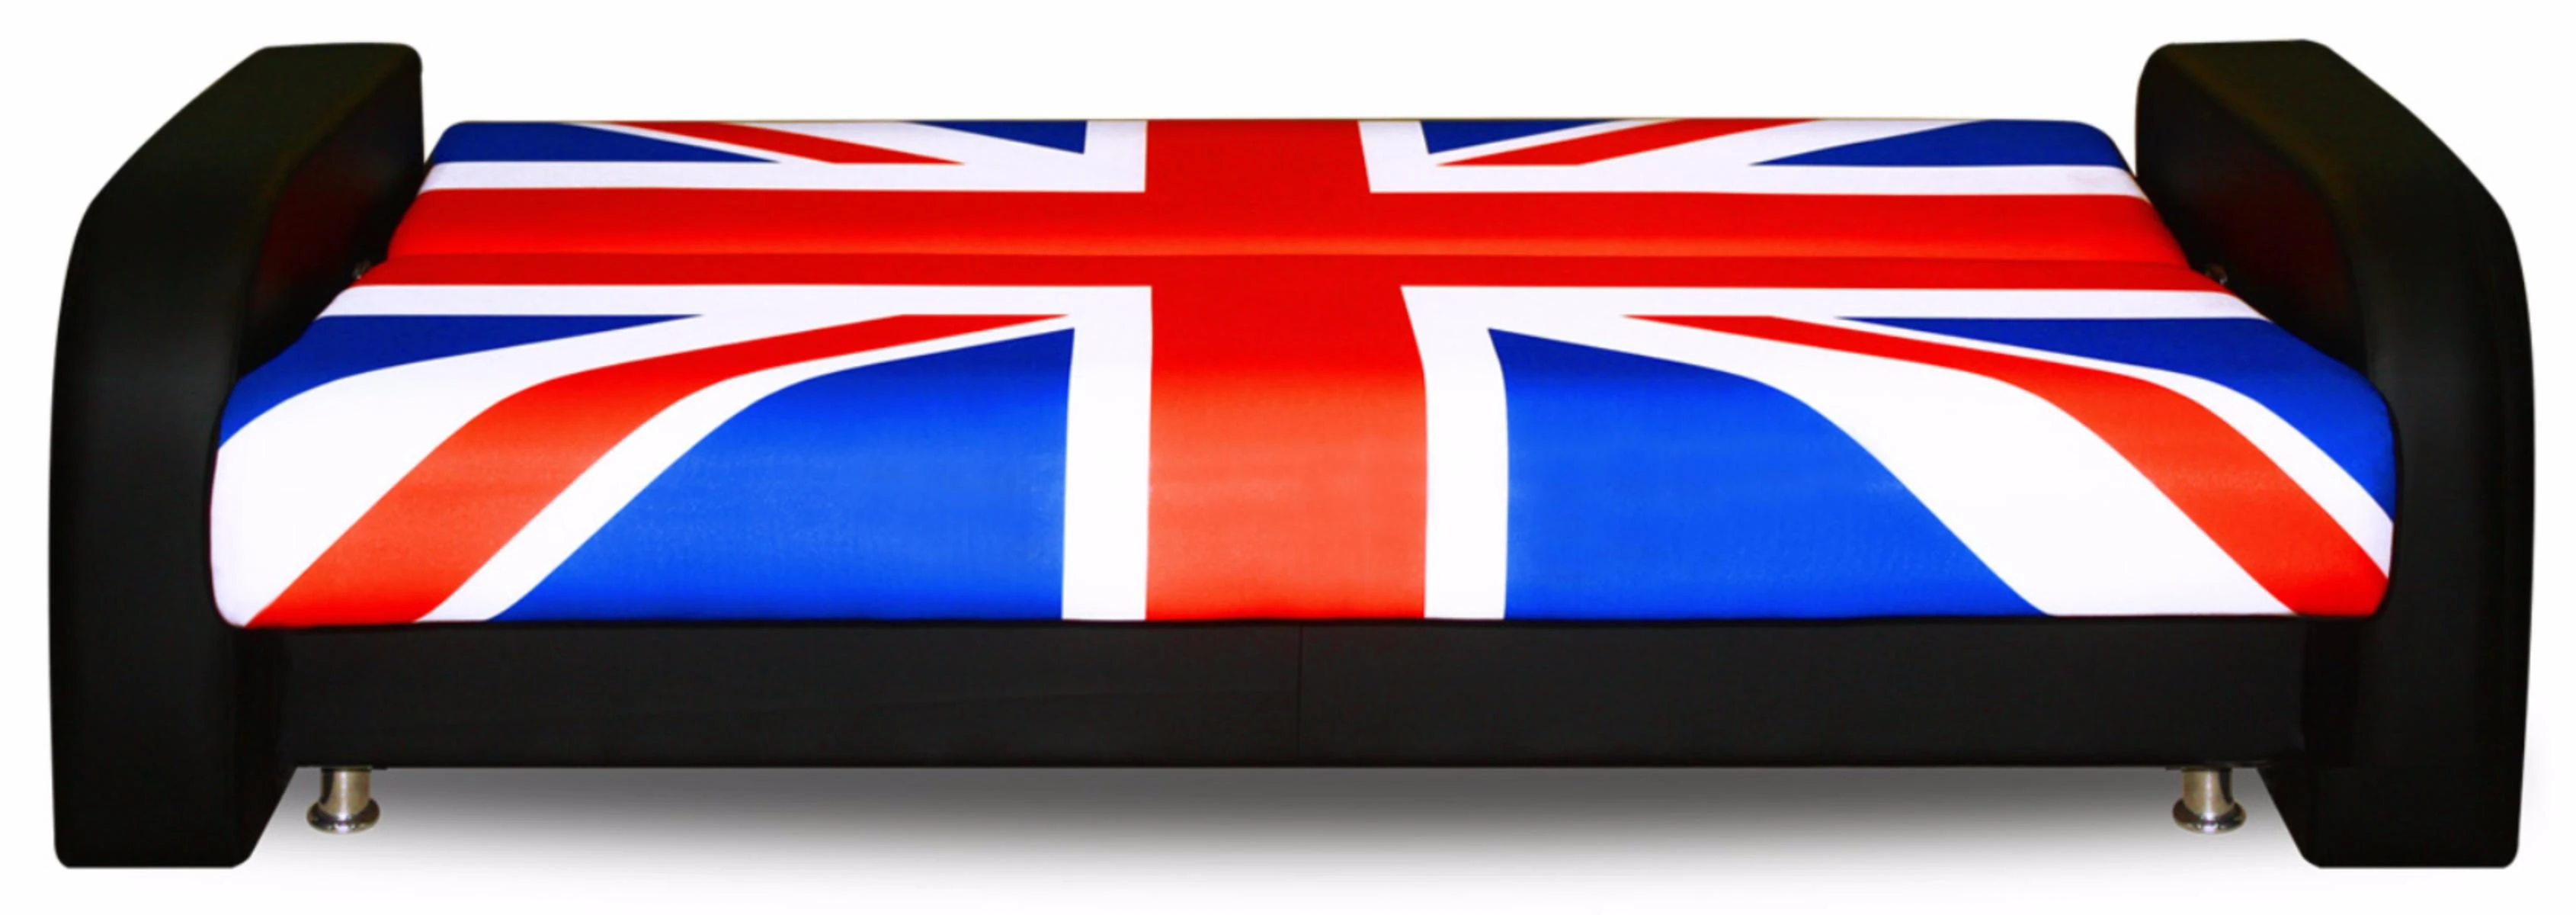 Диван британский флаг